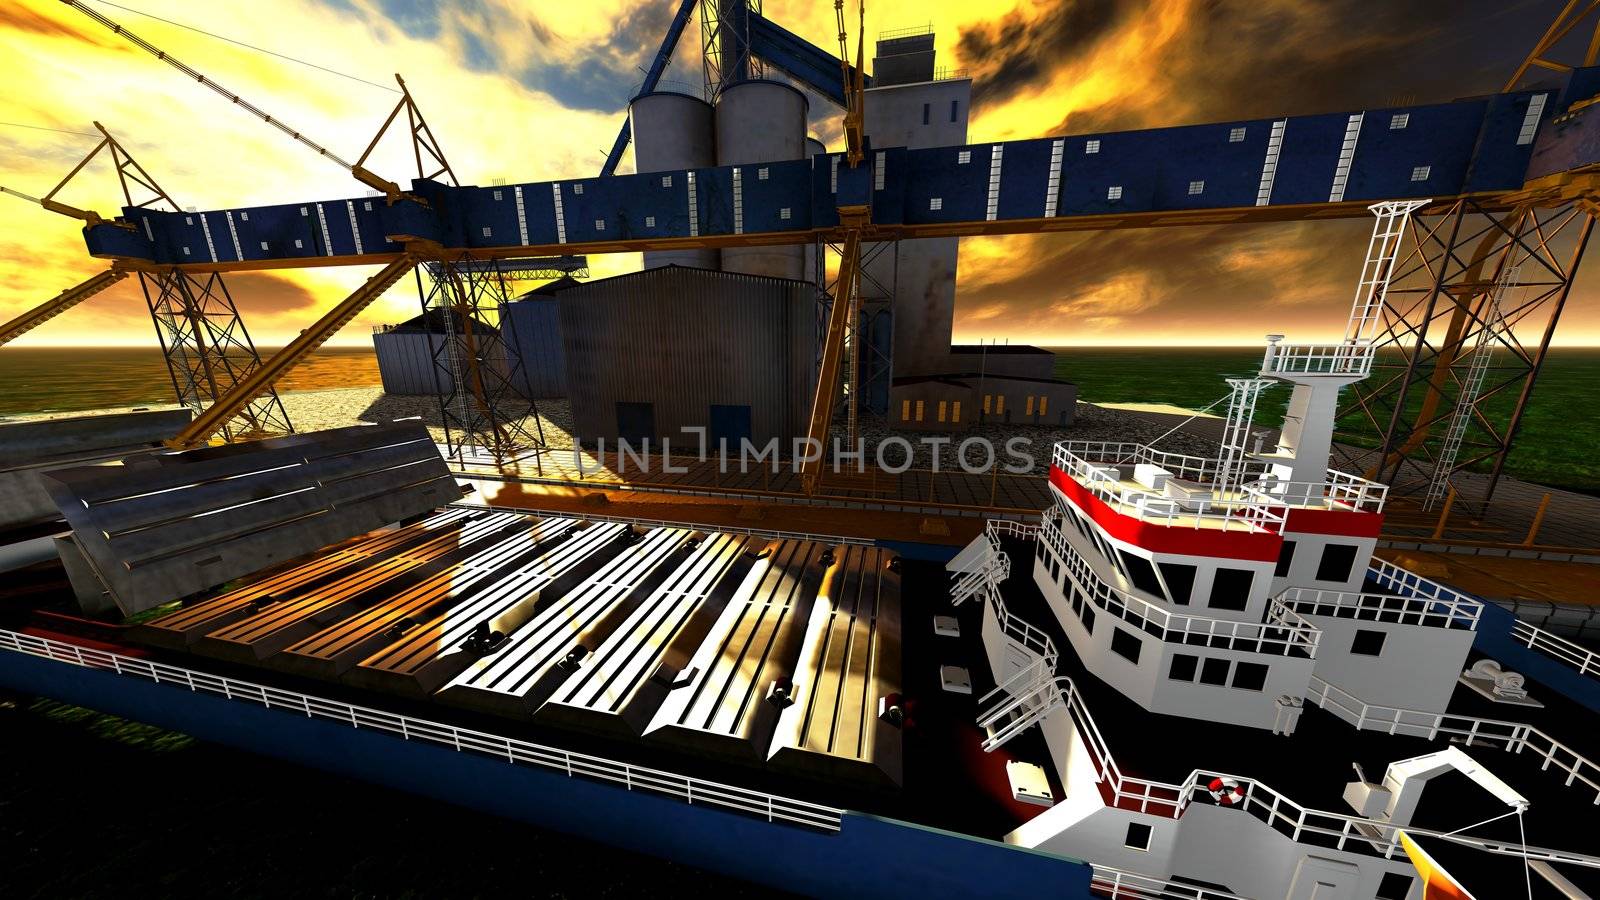 Shipyard by andromeda13